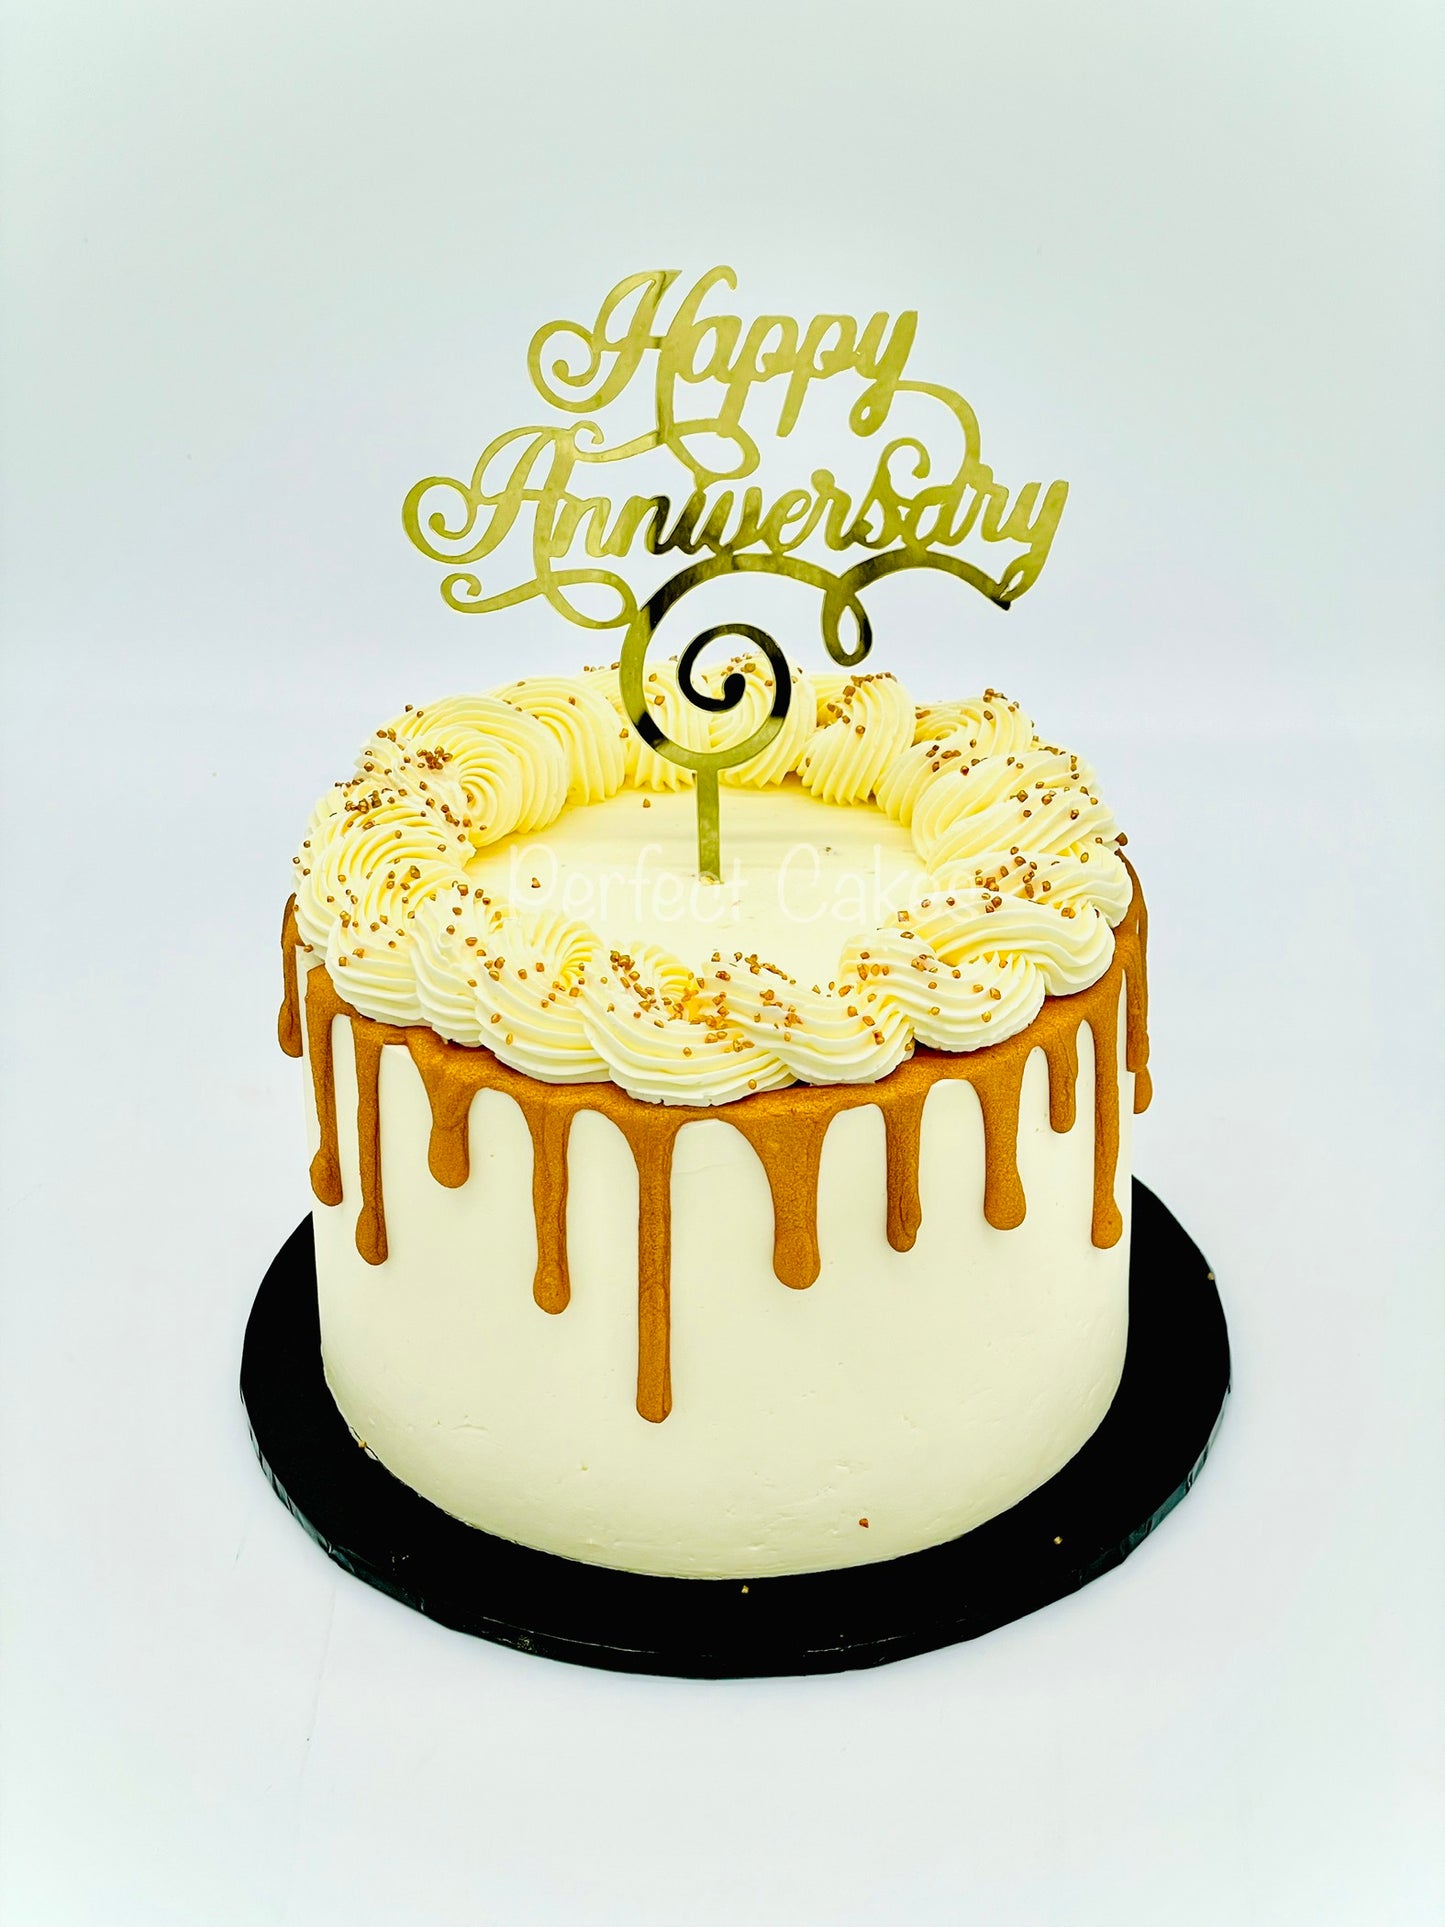 White and Gold Anniversary Cake